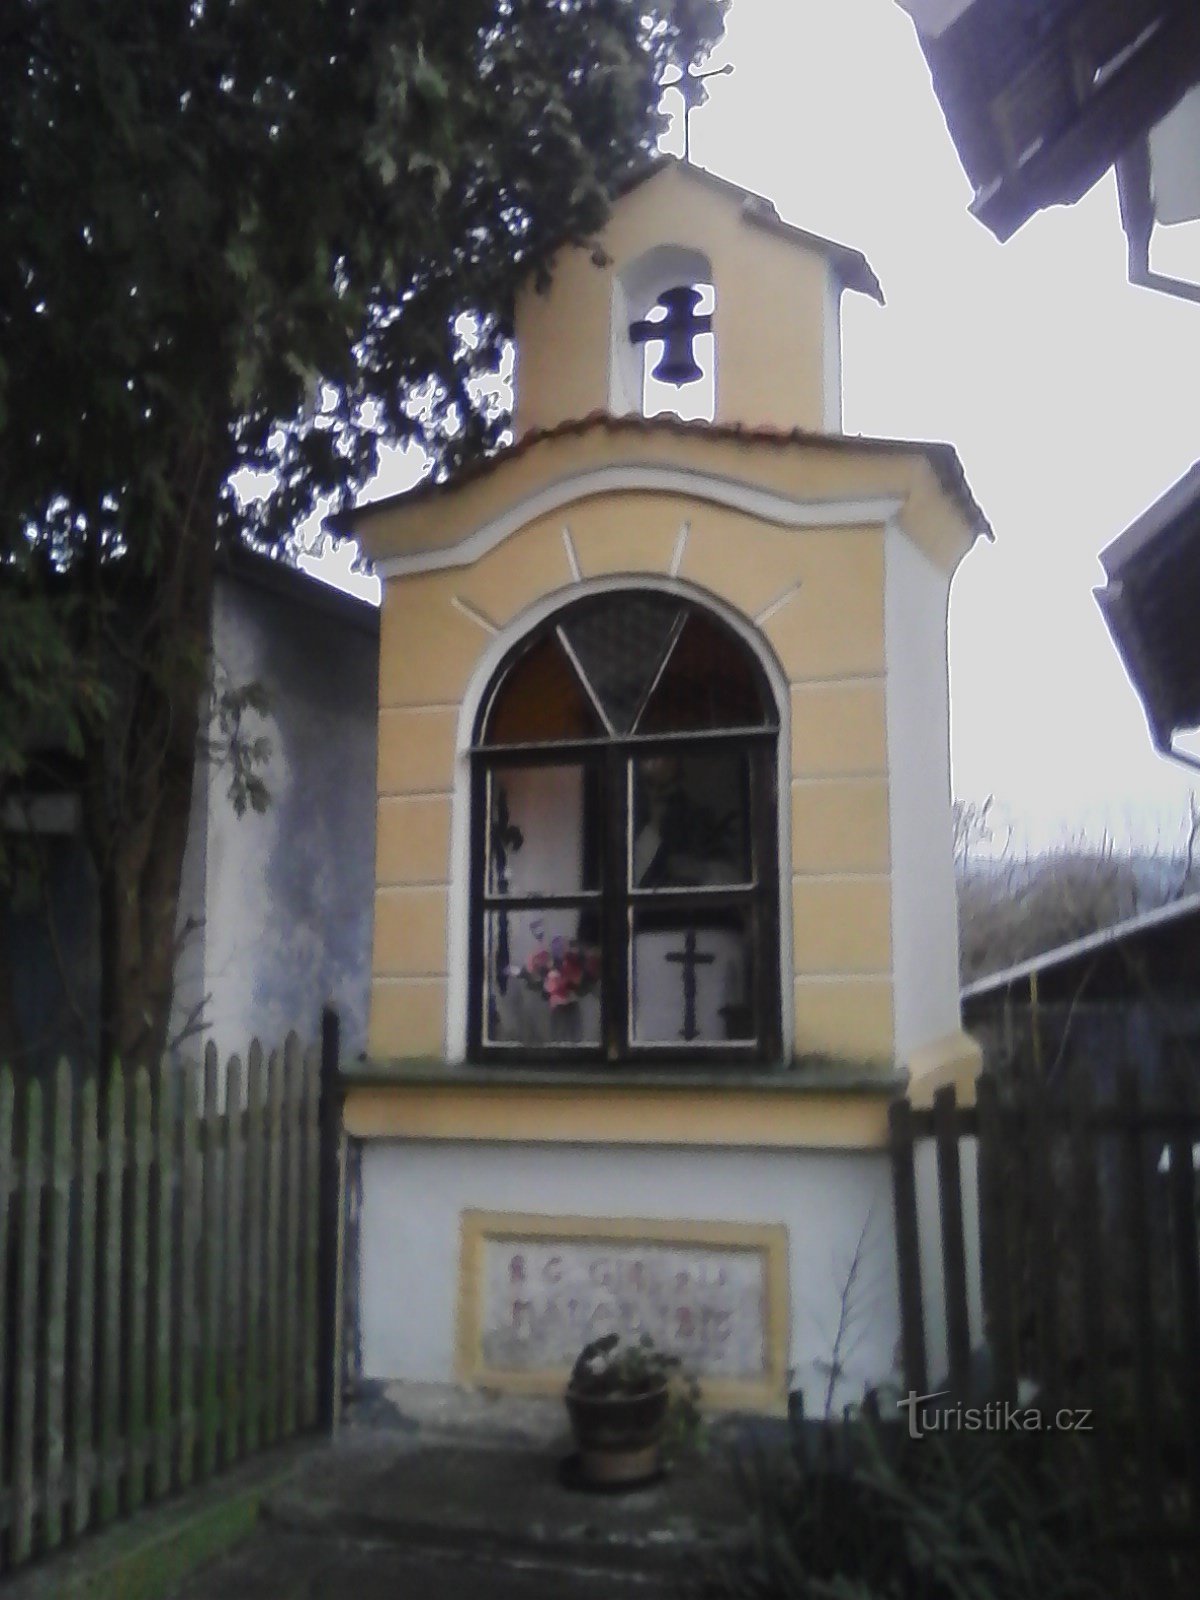 2. Một nhà nguyện nhỏ ở Lidkovice với tháp chuông và cây thánh giá hai tay ở v